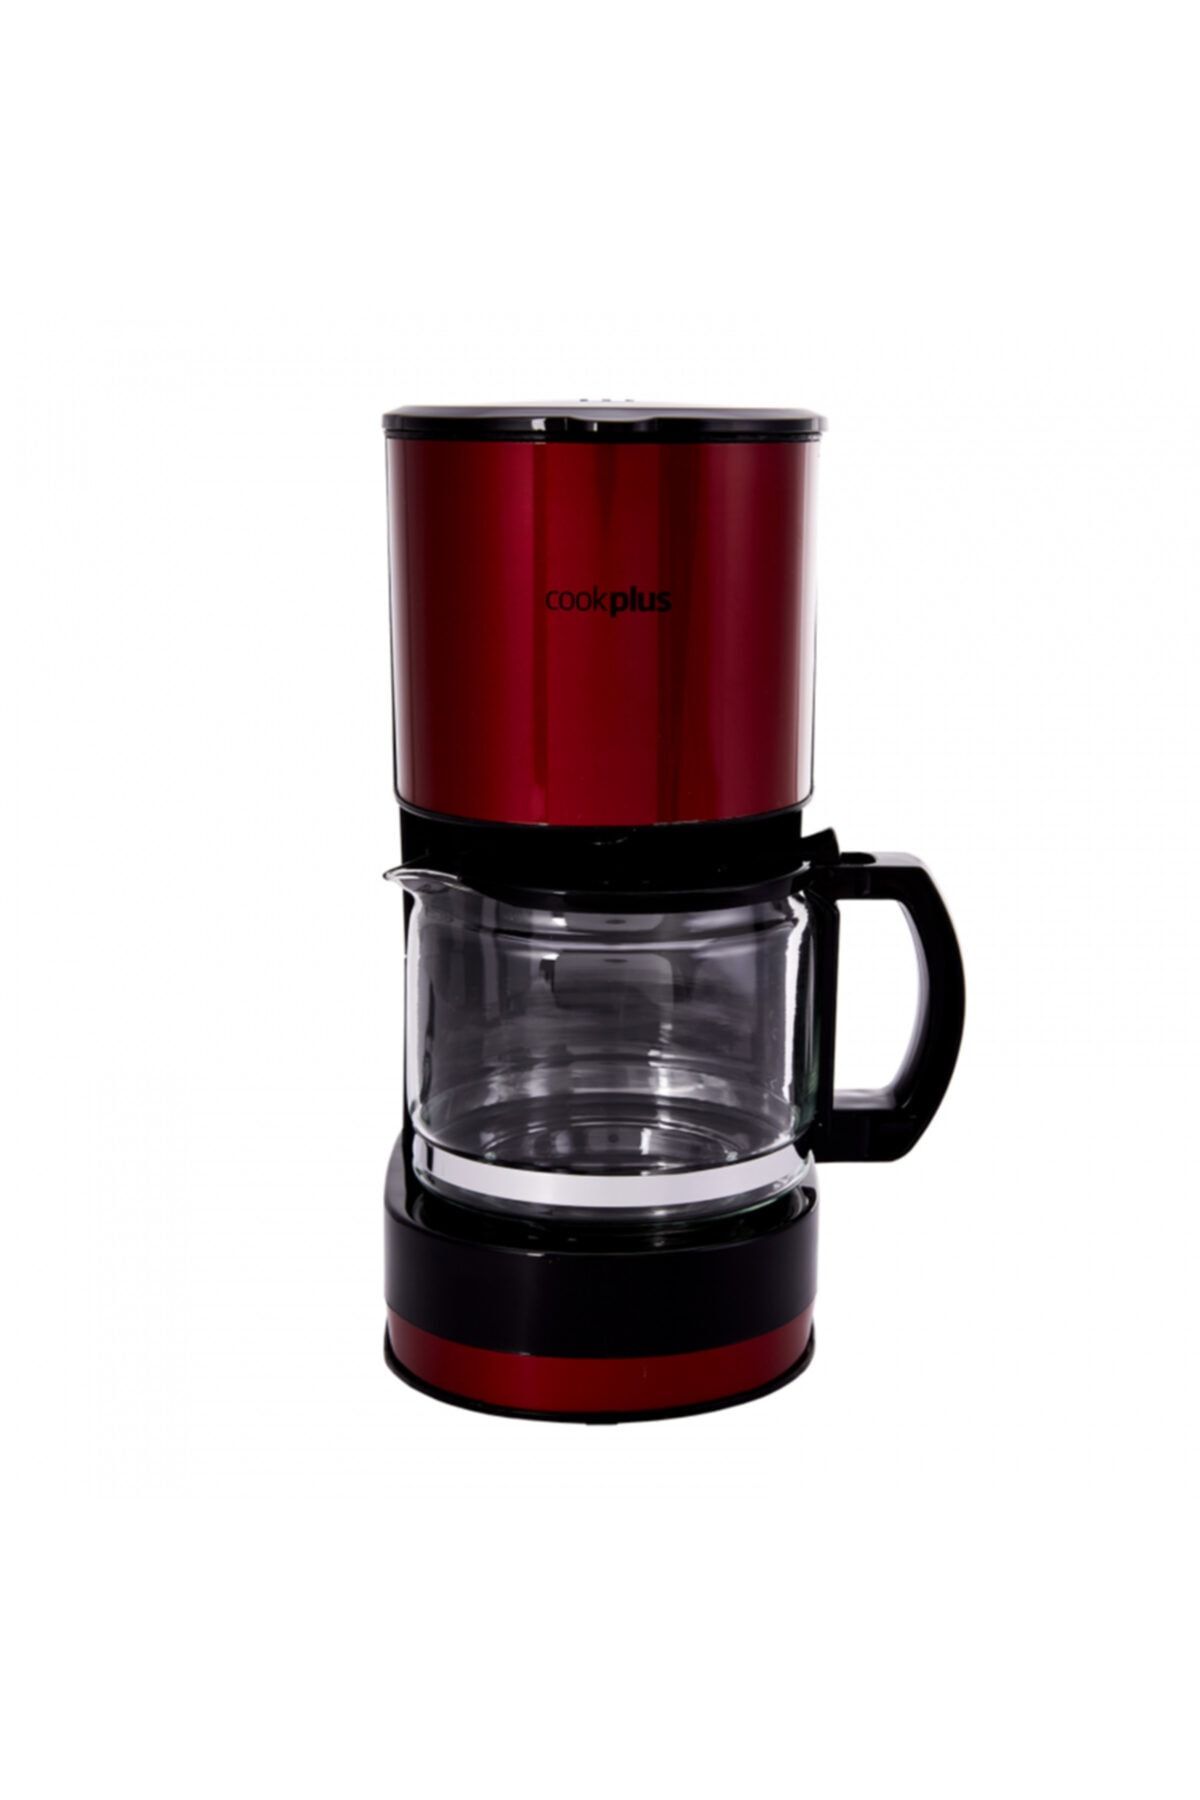 Cookplus Coffee Keyf Kahve Makinesi Kırmızı 601